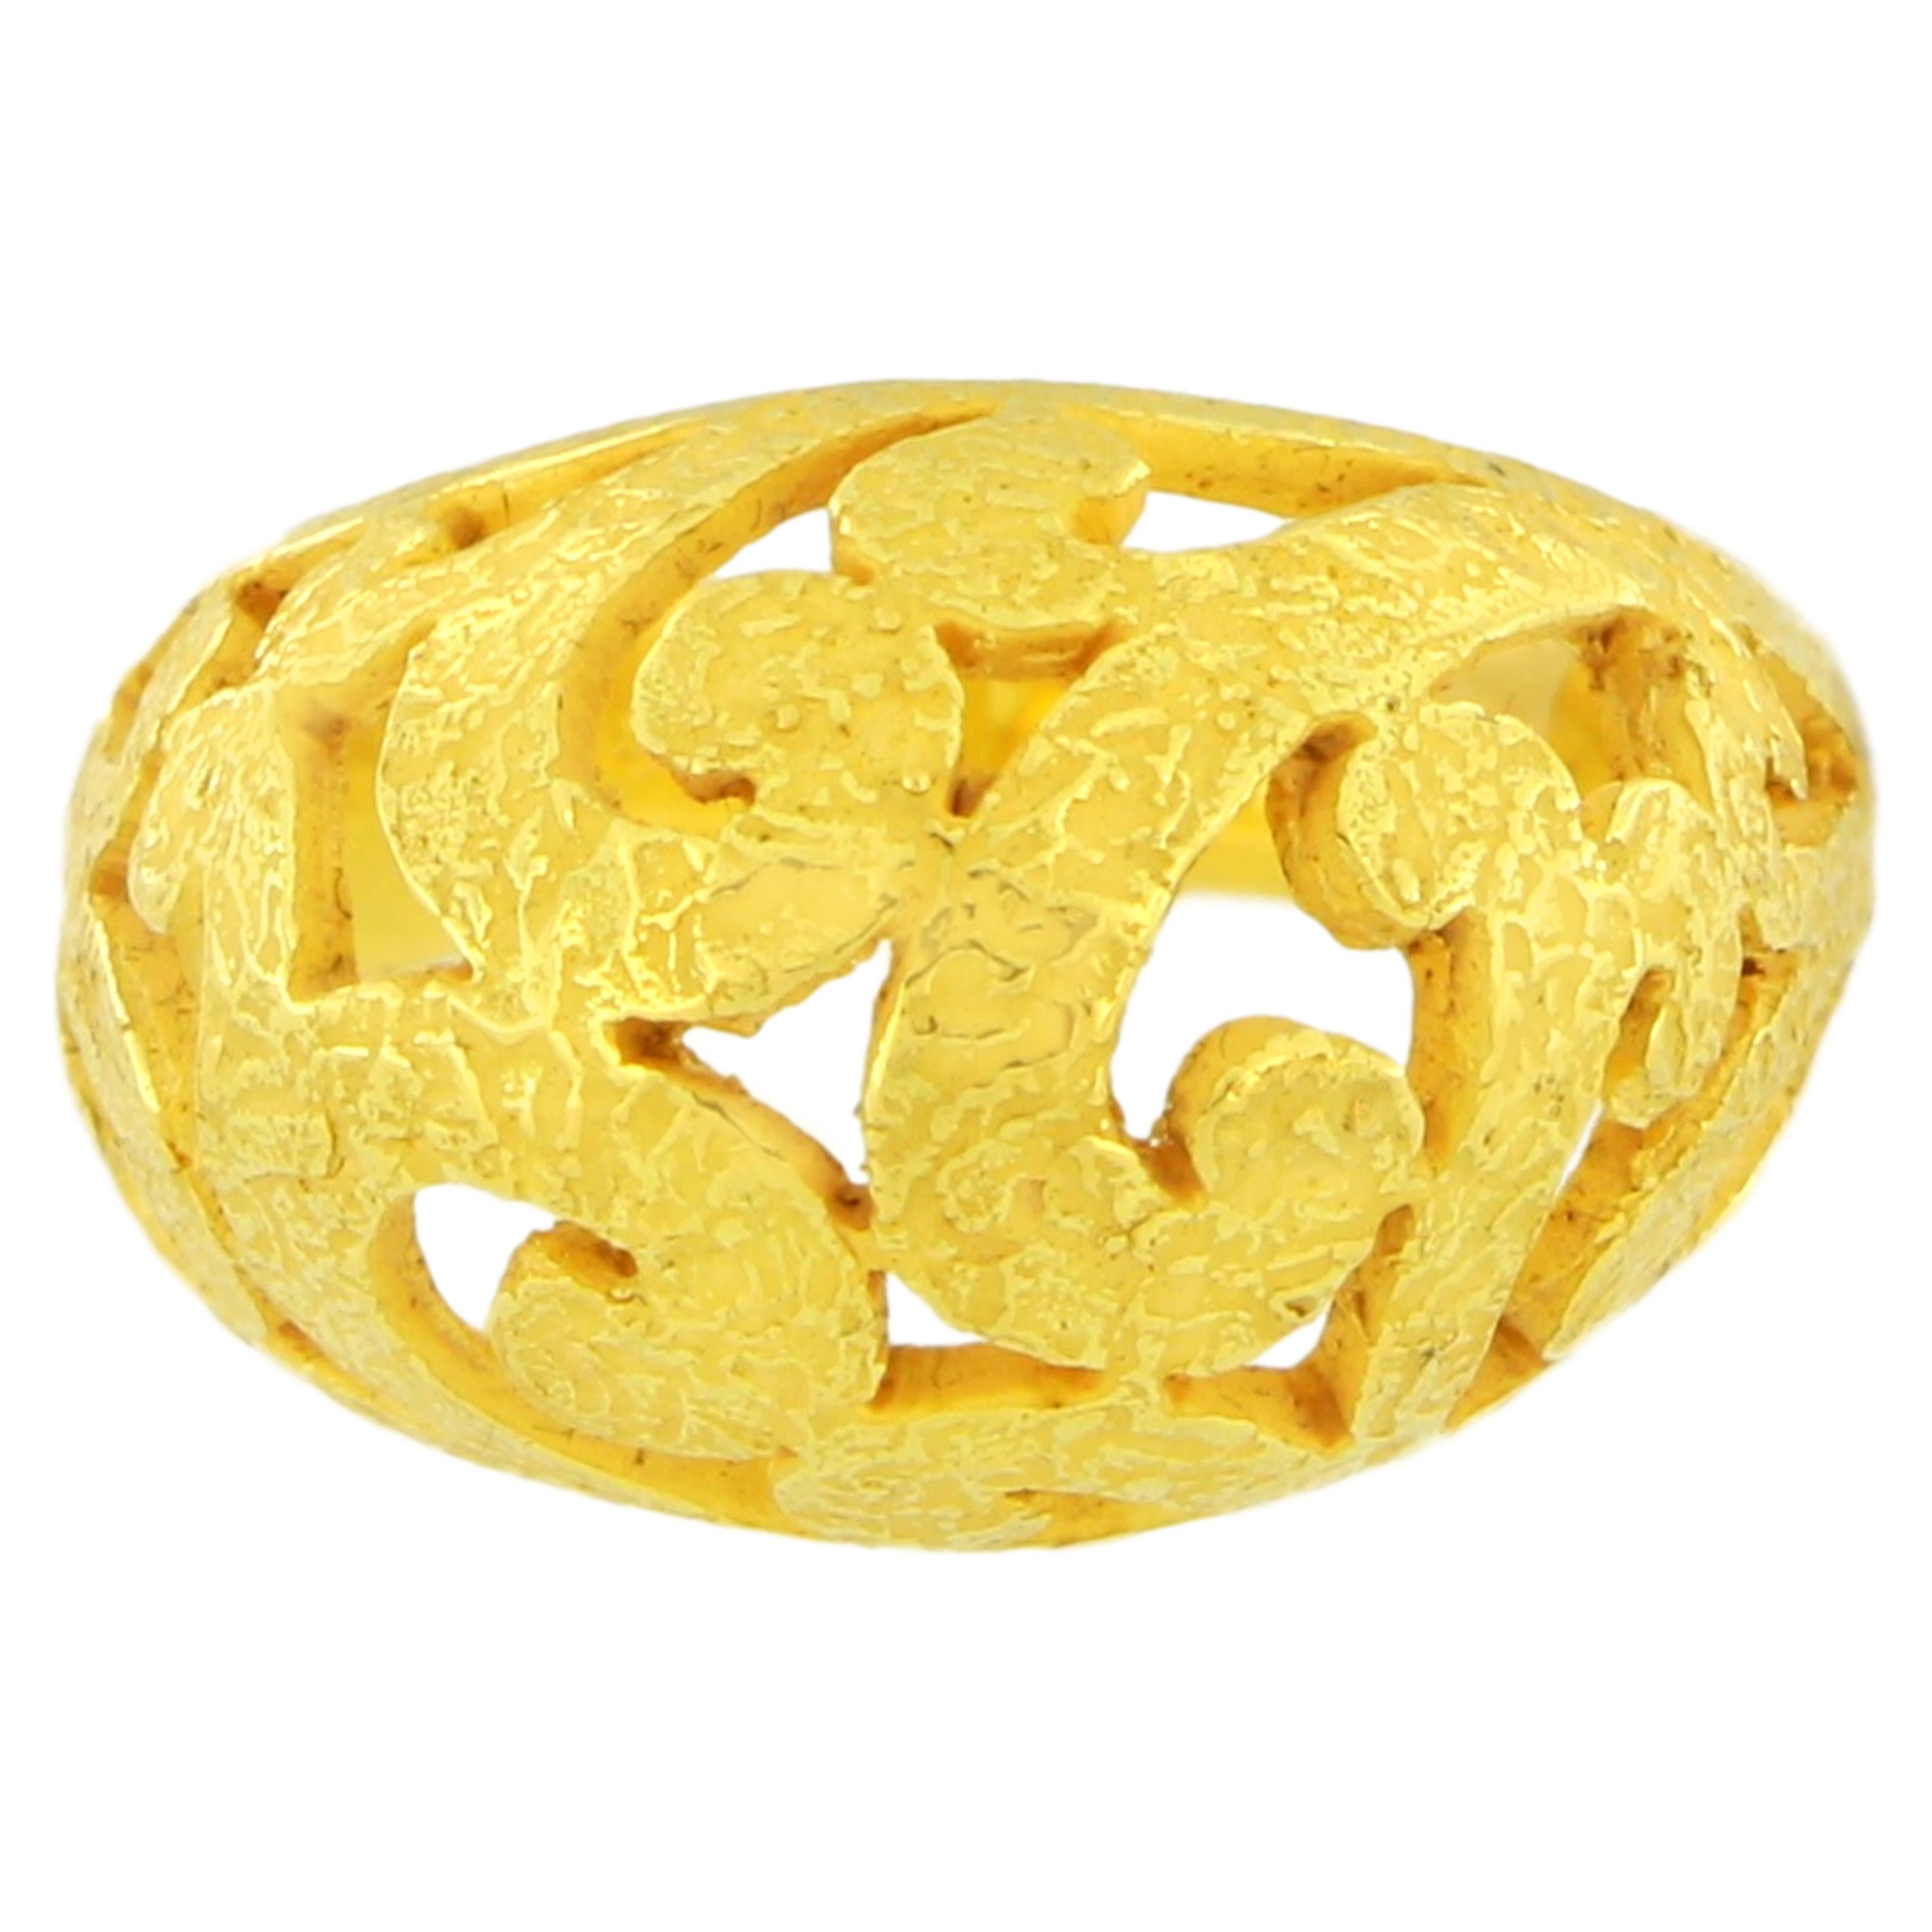 Wunderschöner Art-Déco-Ring im Schnörkel-Stil aus satiniertem Gelbgold, handgefertigt im Wachsausschmelzverfahren.

Der Wachsausschmelzguss, eine der ältesten Techniken zur Herstellung von Schmuck, bildet die Grundlage für die Schmuckproduktion von